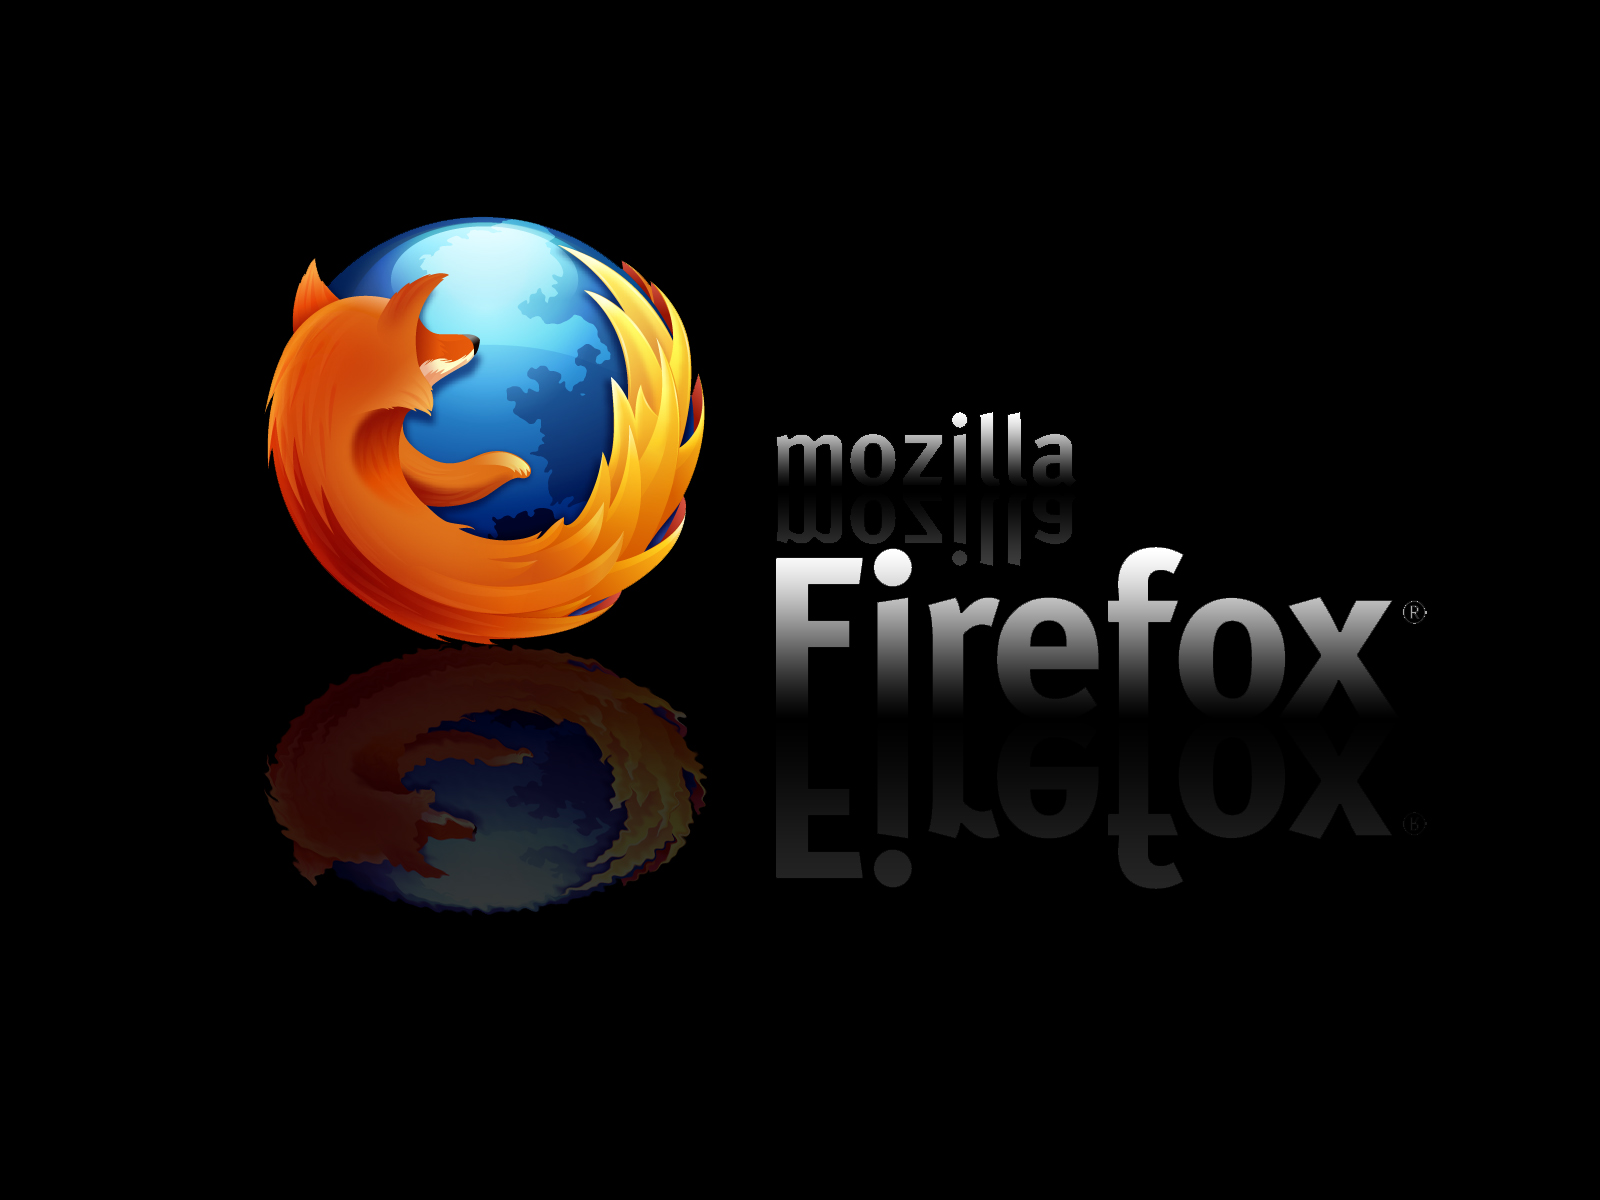 mozilla firefox start page wallpaper